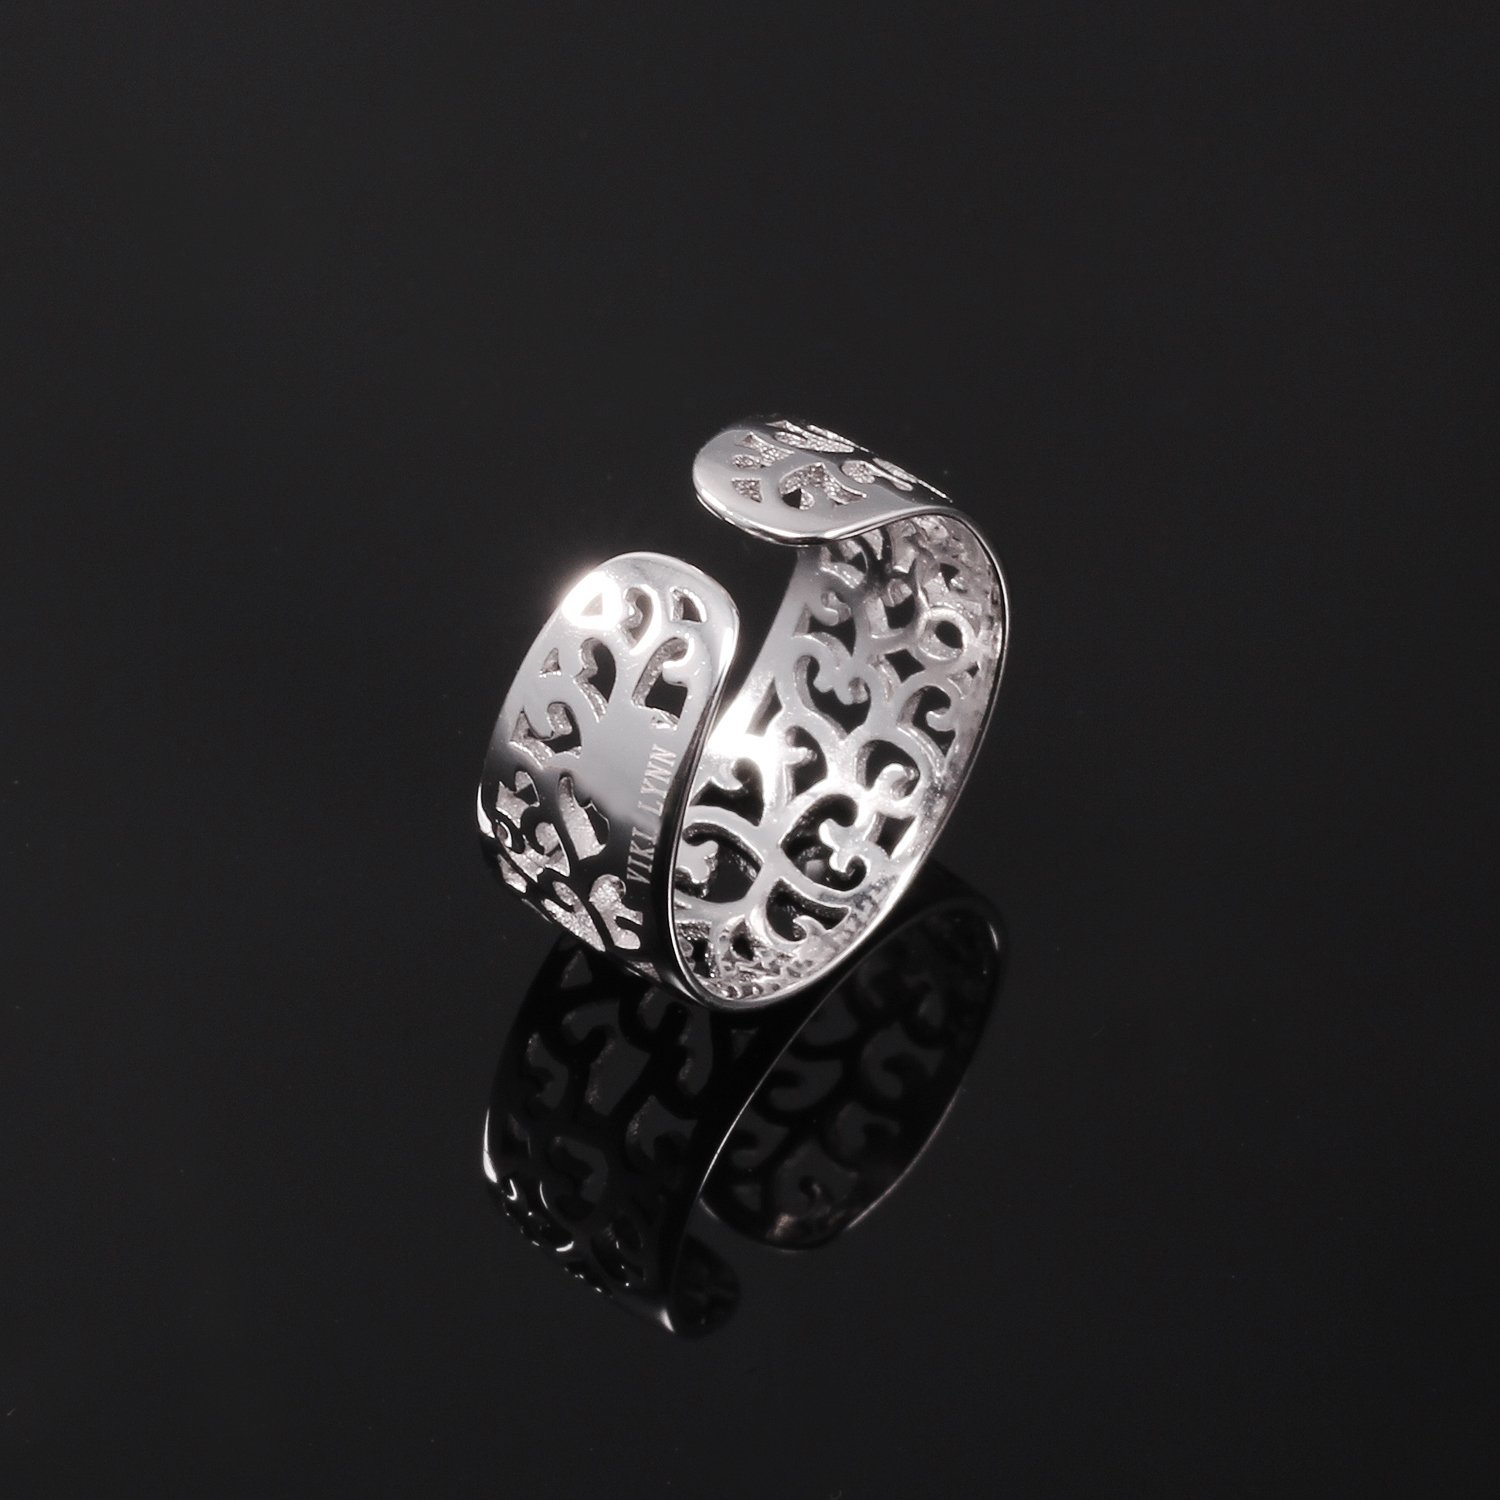 VIKI LYNN Toe Rings for Women Sterling Silver Adjustable Open Rings Tail Ring